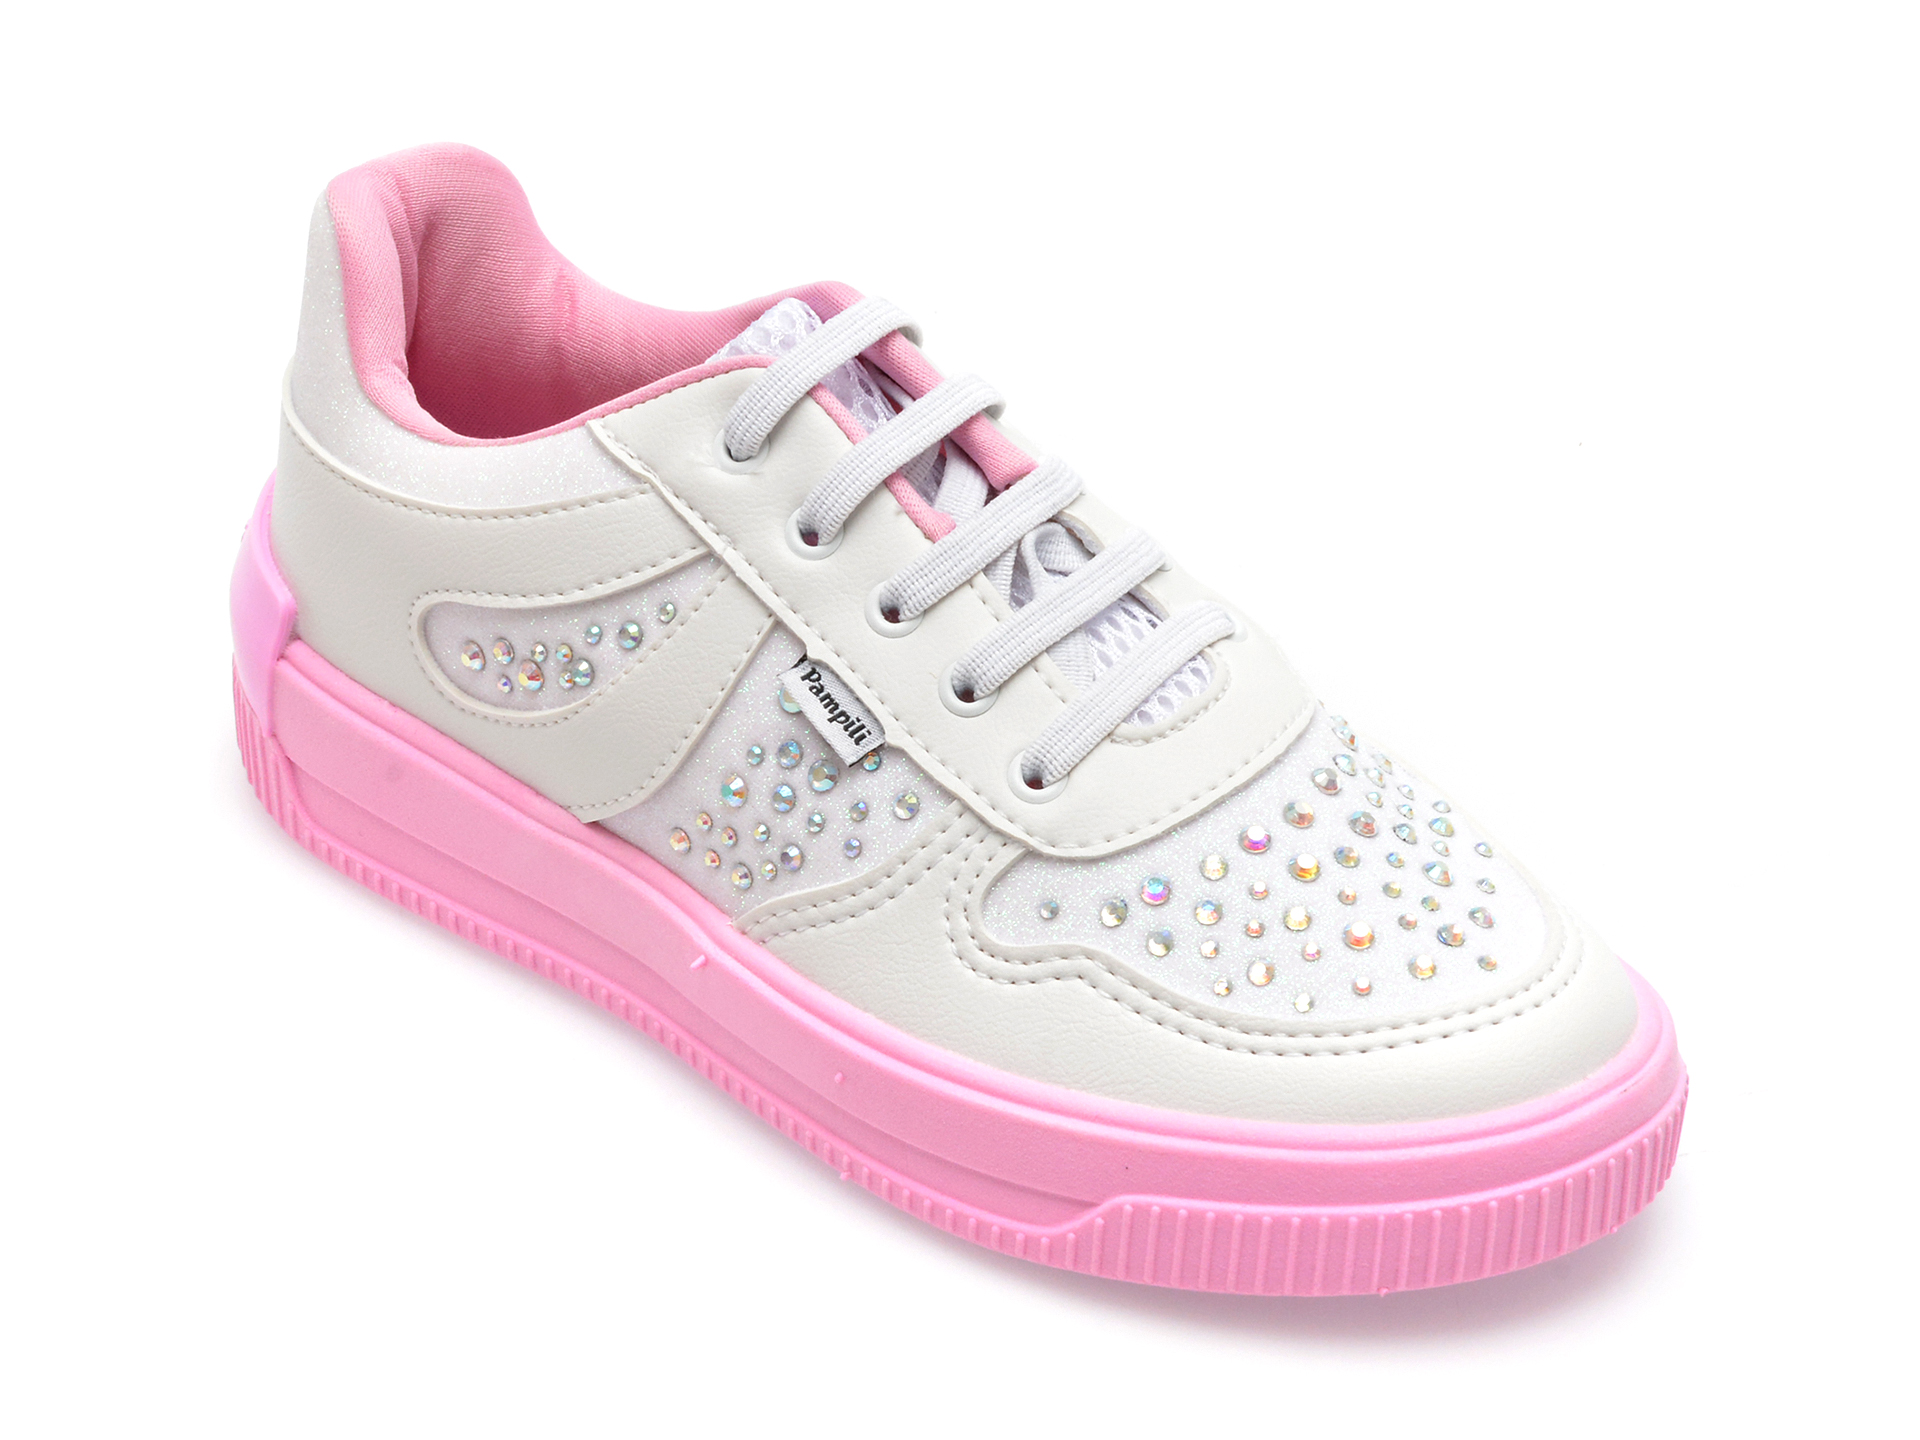 Pantofi PAMPILI albi, 667063, din piele ecologica /copii/incaltaminte